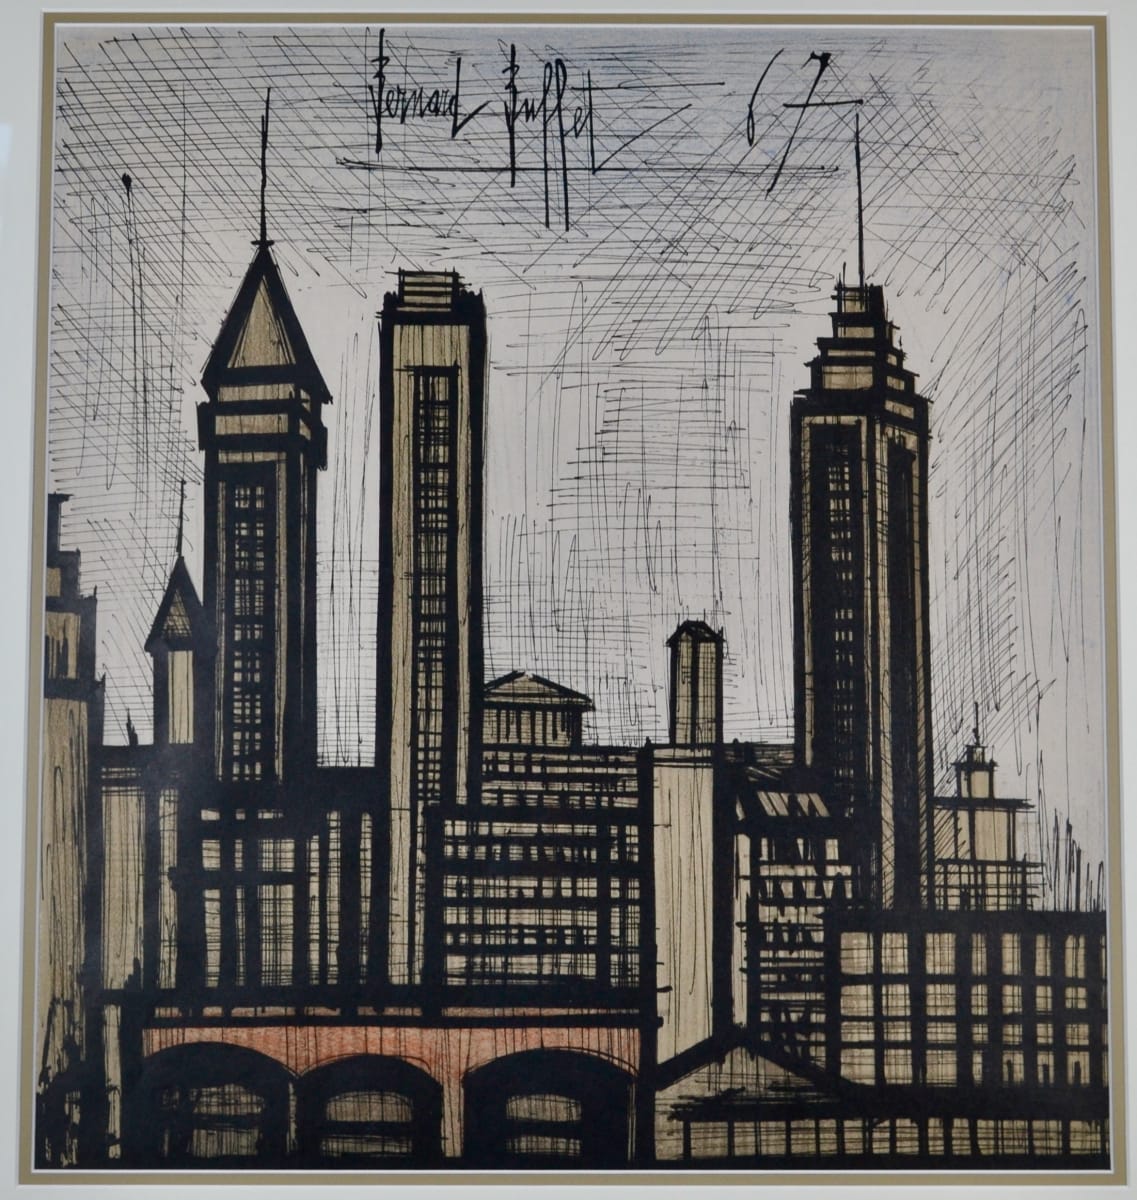 Exhibition Poster (Bernard Buffet, New York, 1967) by Atelier Mourlot (printer) 